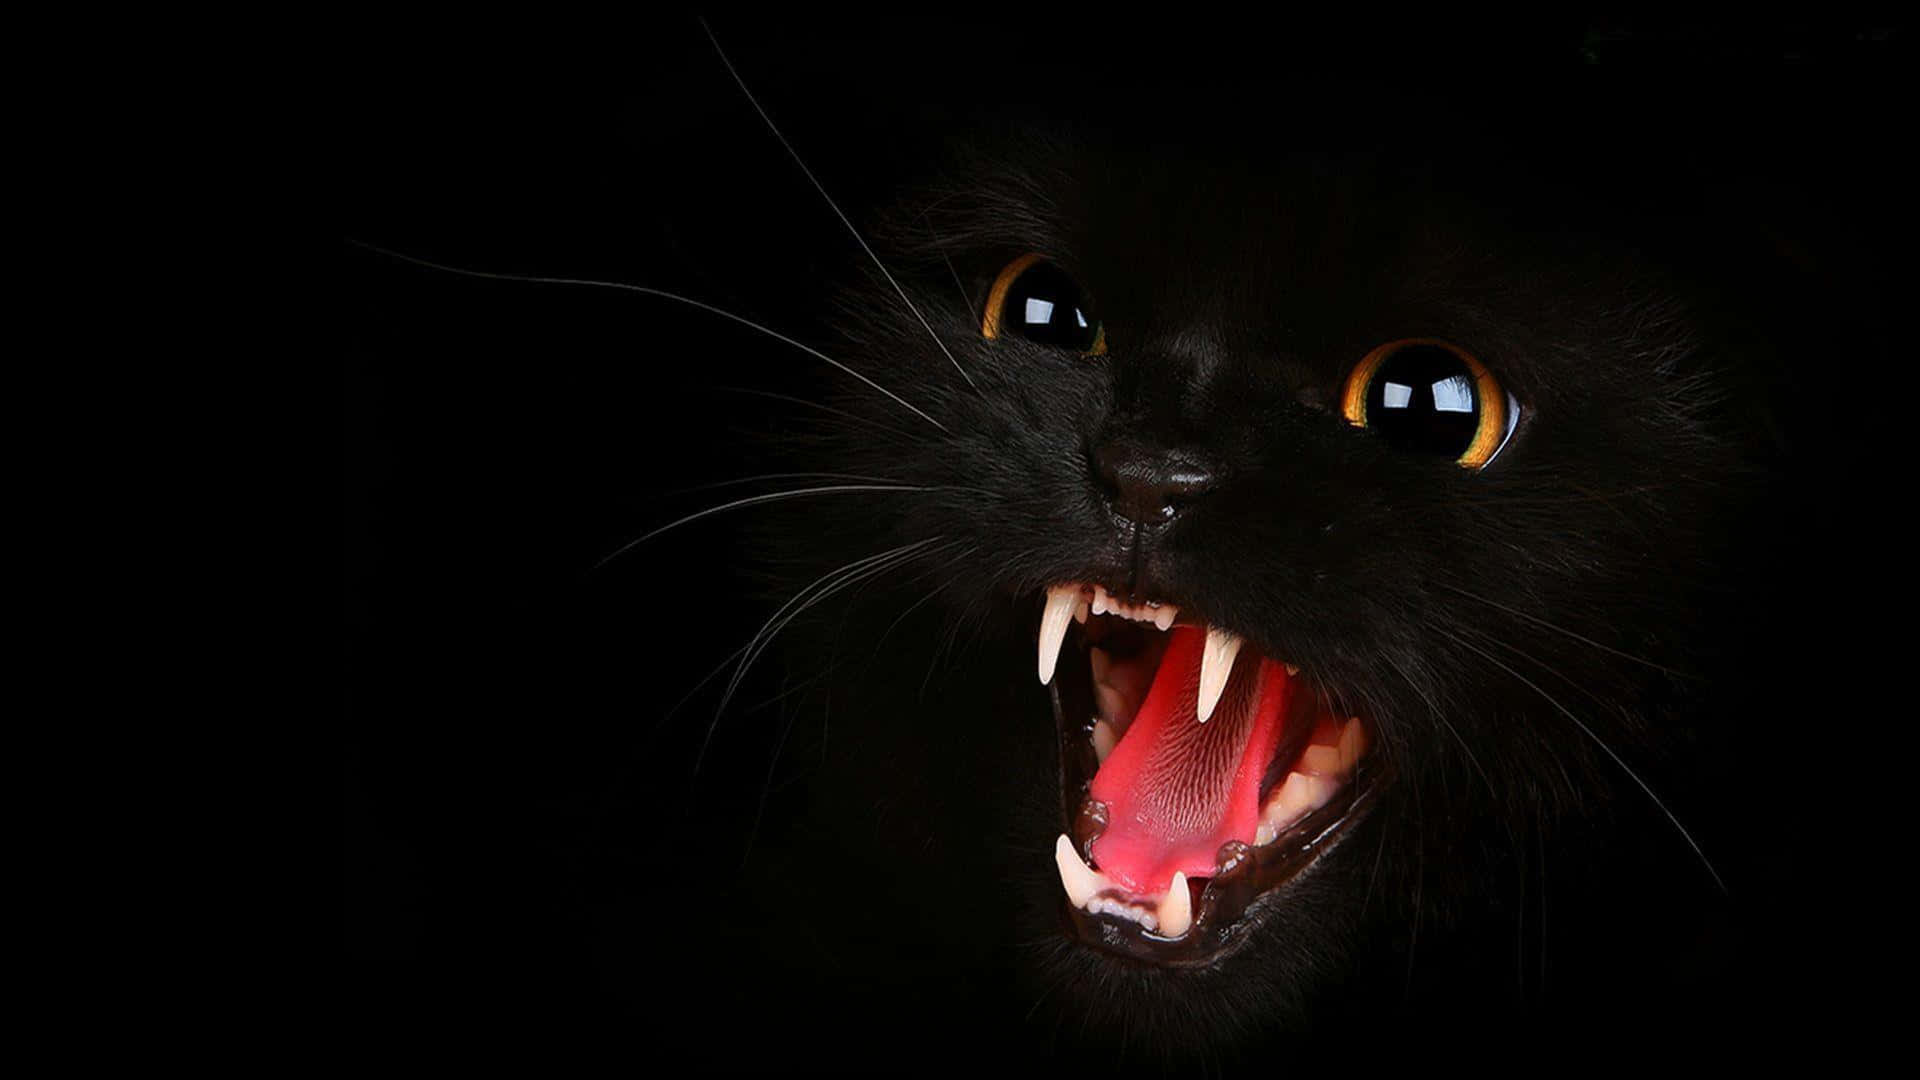 Uncurioso Gato Negro Posado En Una Plataforma De Madera, Listo Para Explorar El Mundo.